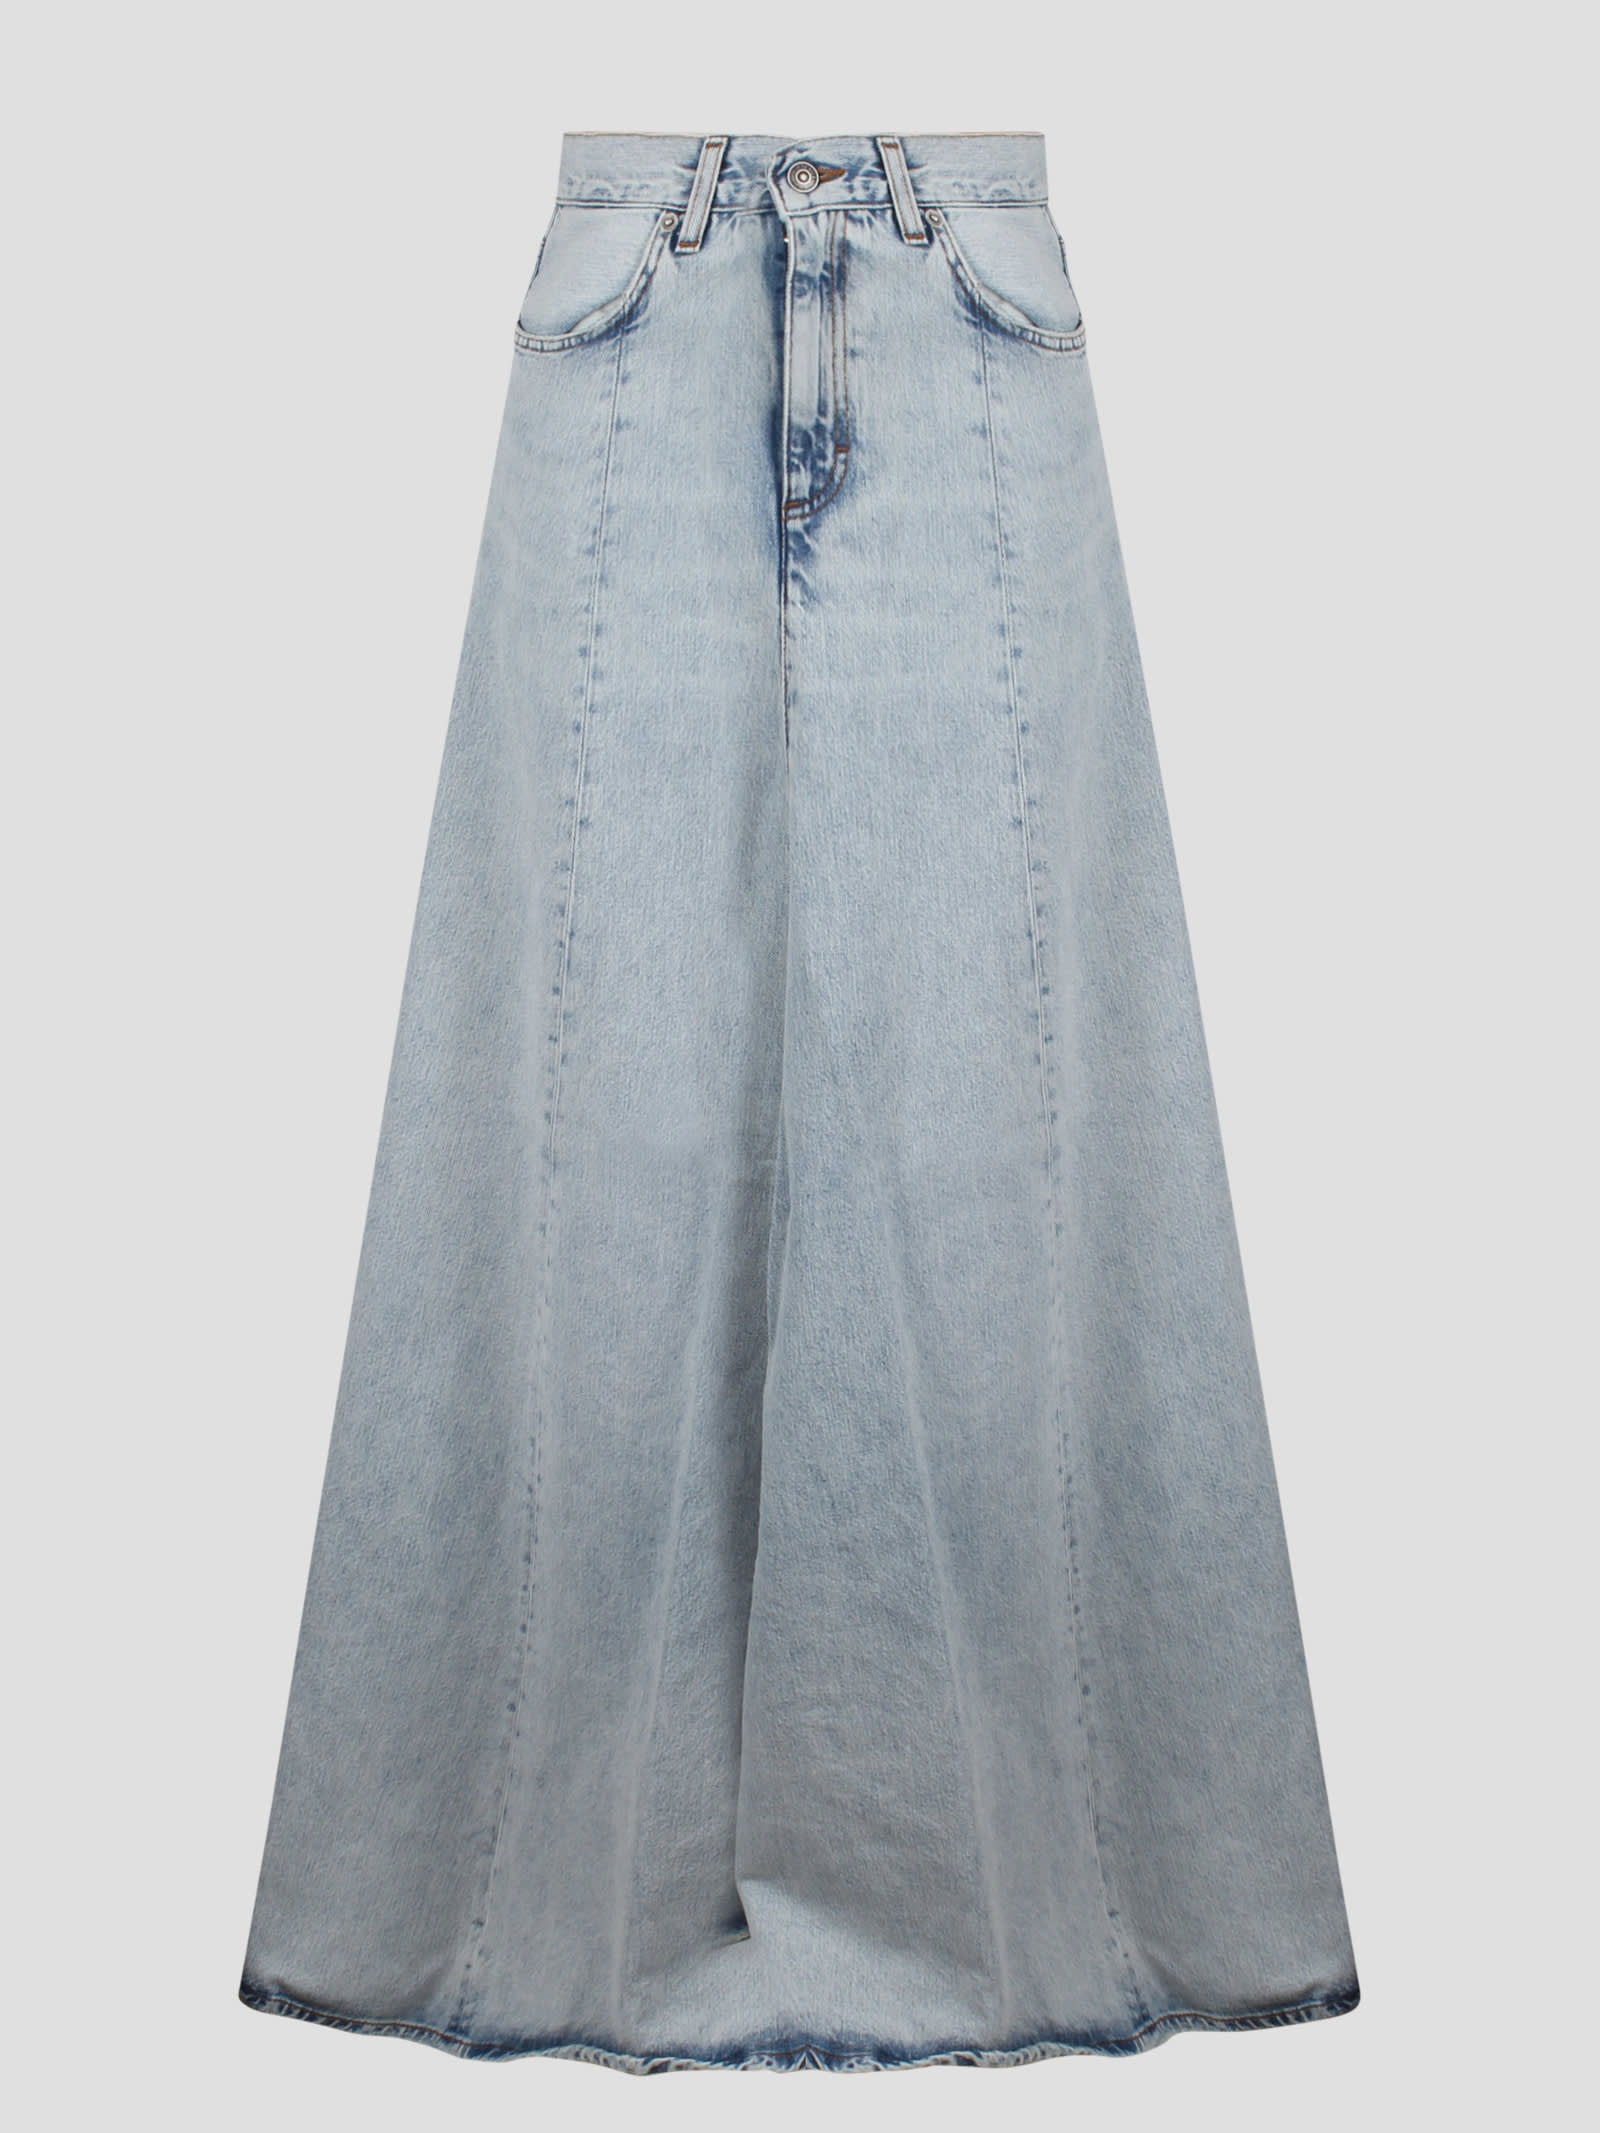 Serenity Stromboli Blue Denim Skirt